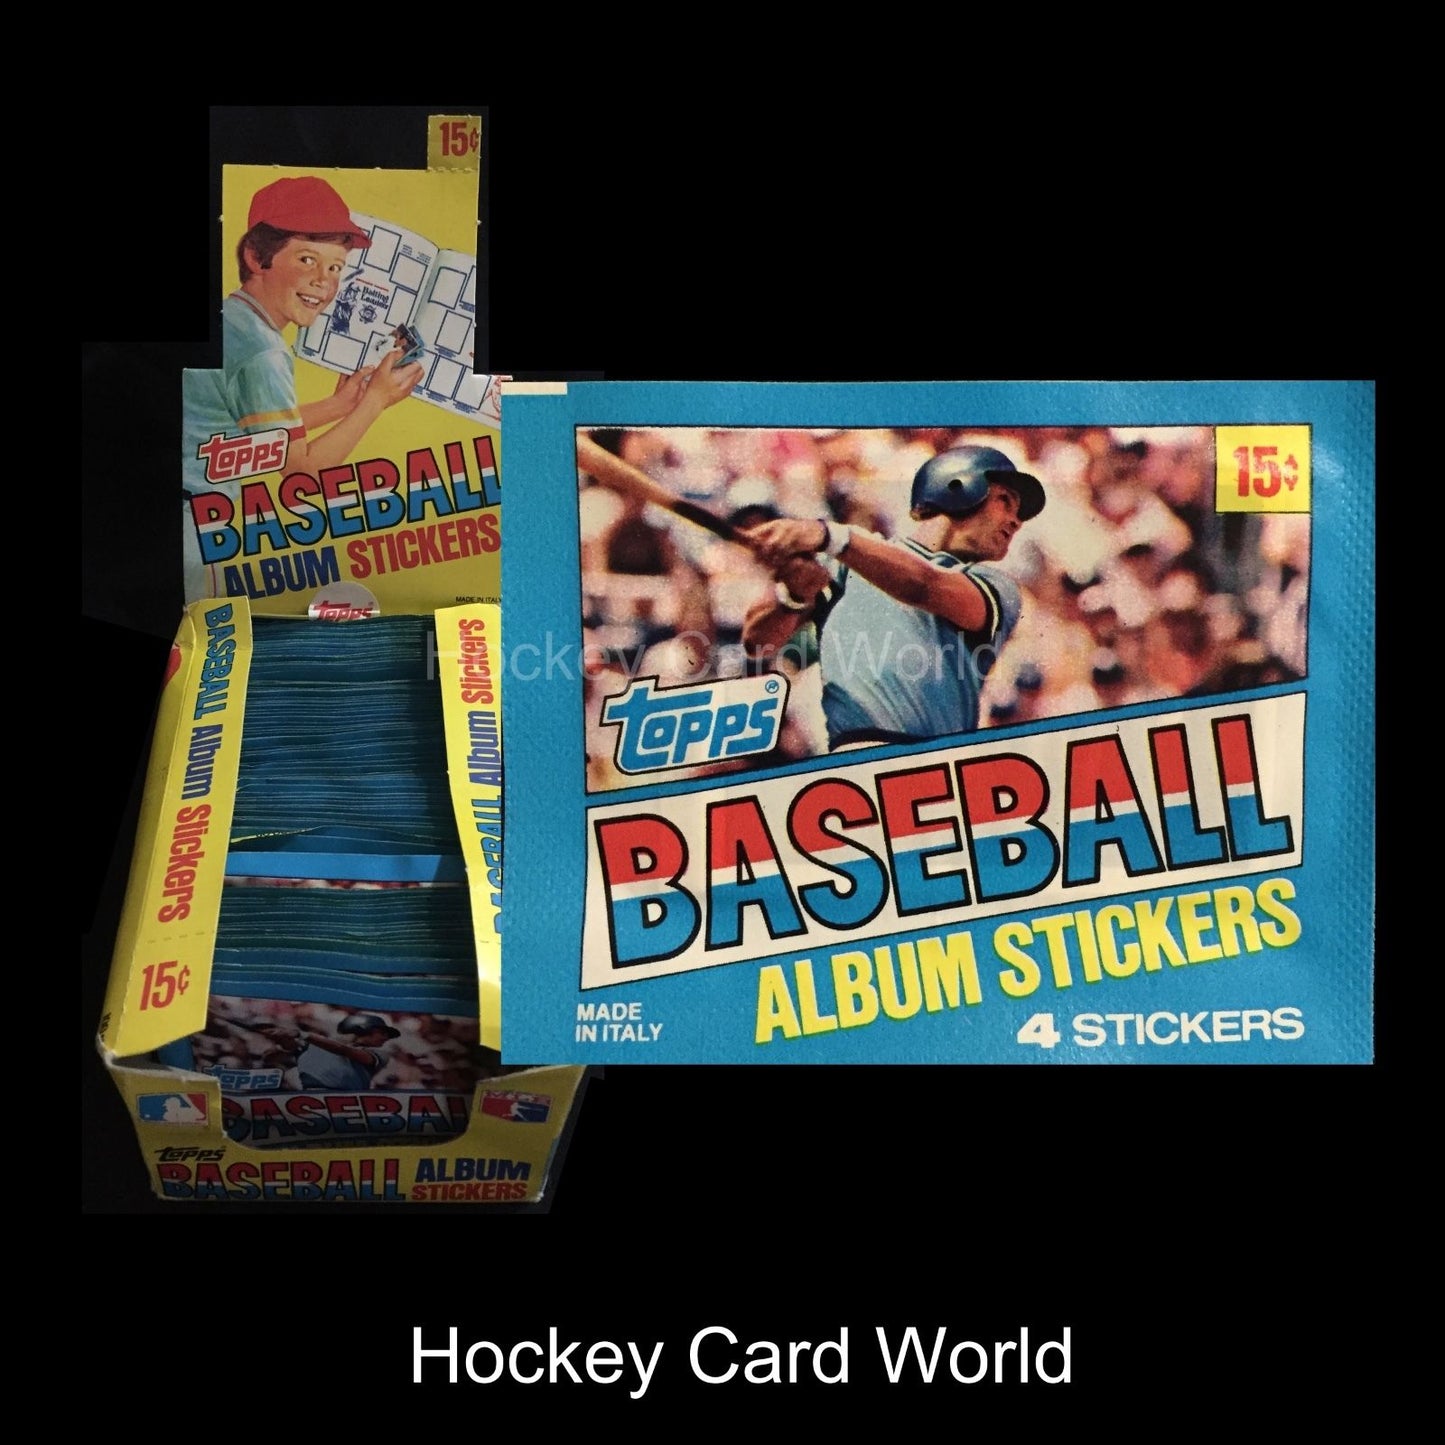  1981 Topps Baseball Album Sticker Sealed Pack - 4 Sticker Pack  **RARE** Image 1